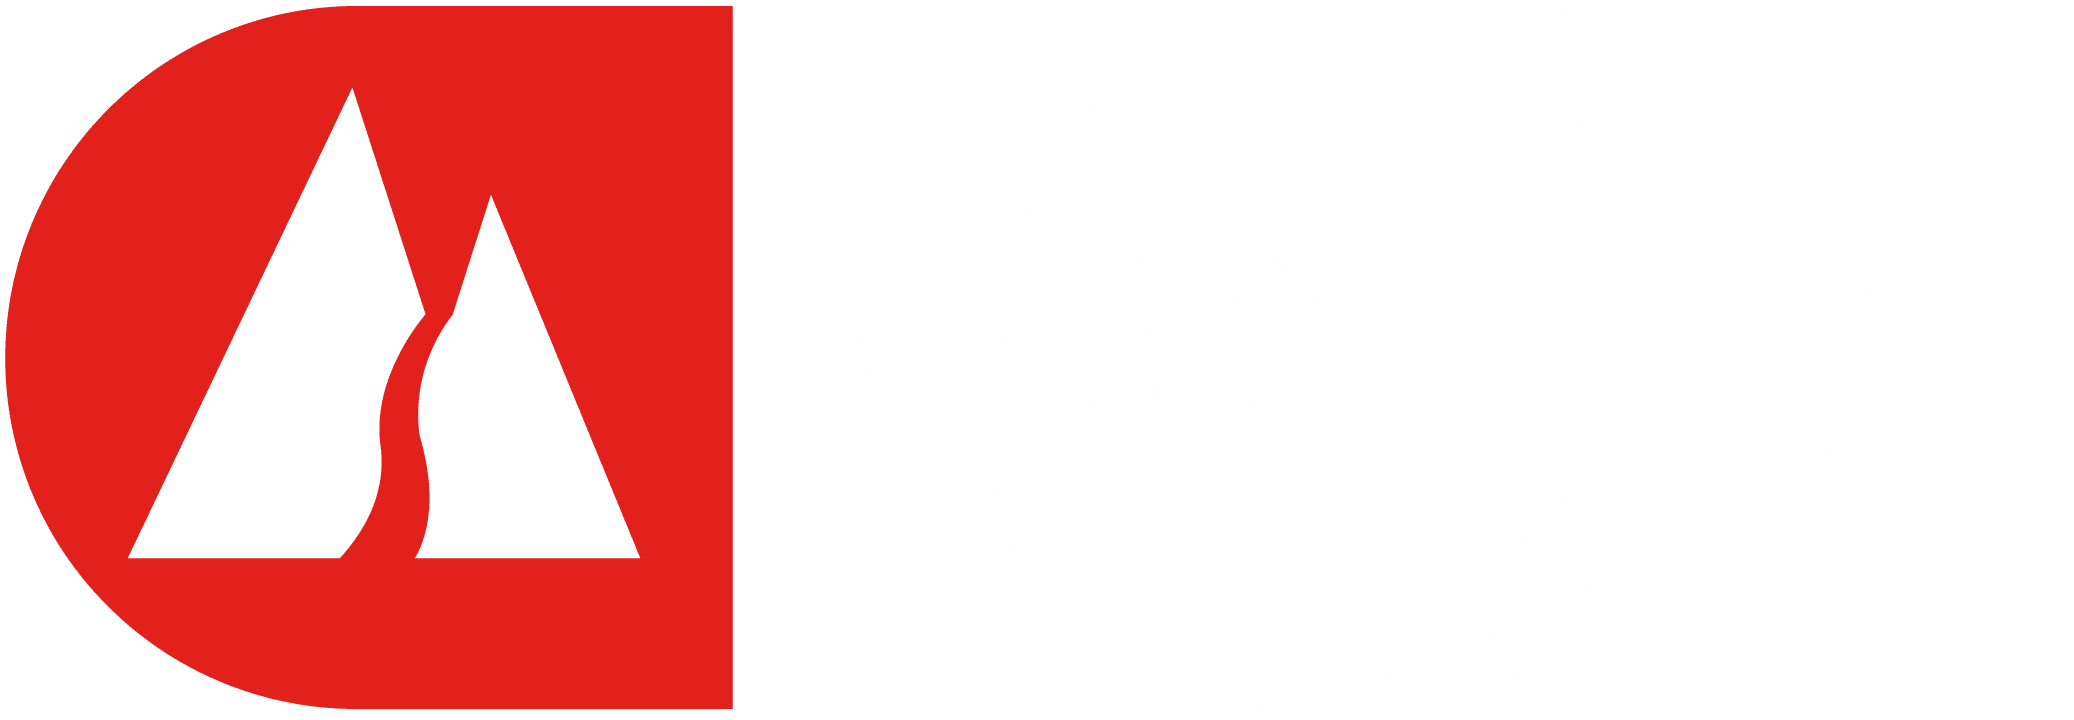 freerideworldtour_titletreatment_logo